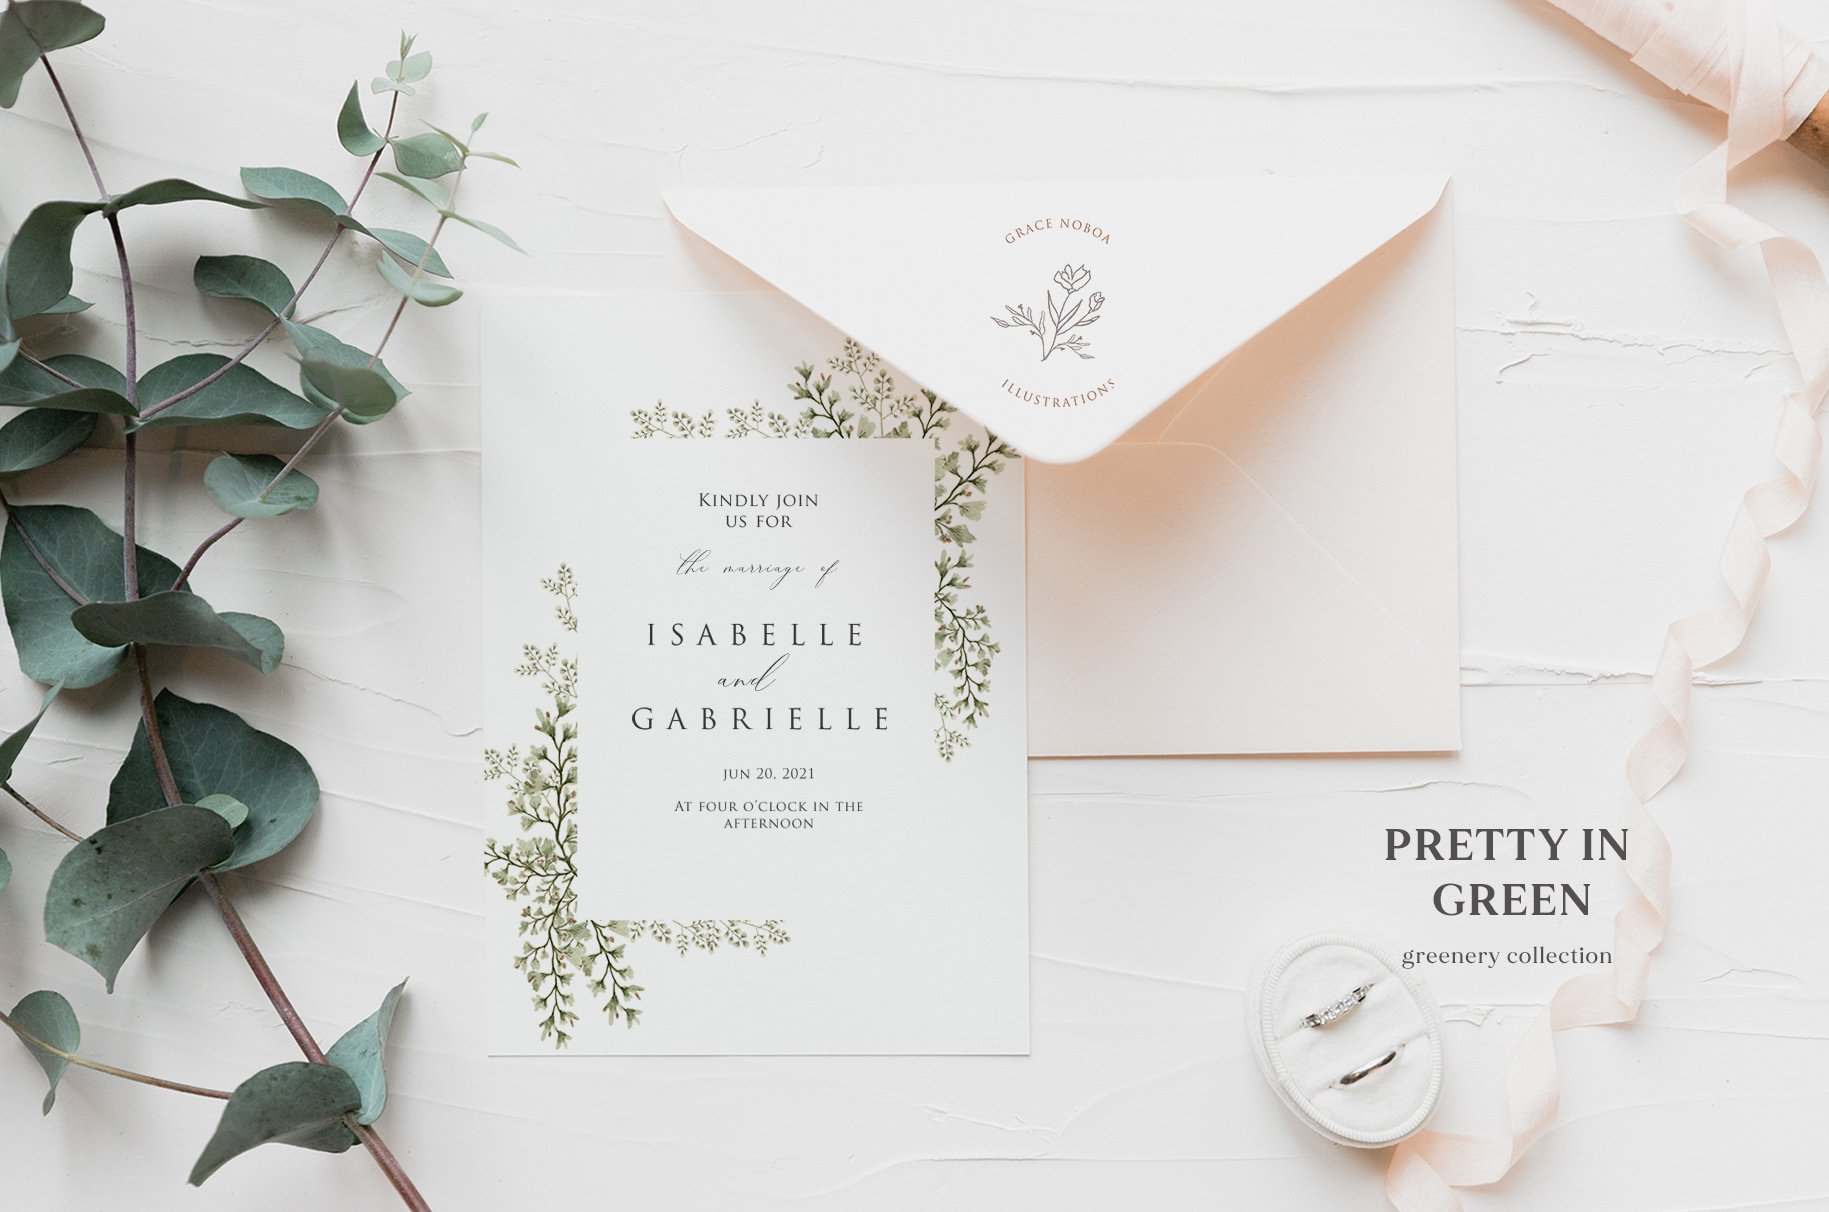 Perfect design for the minimalistic invitations.